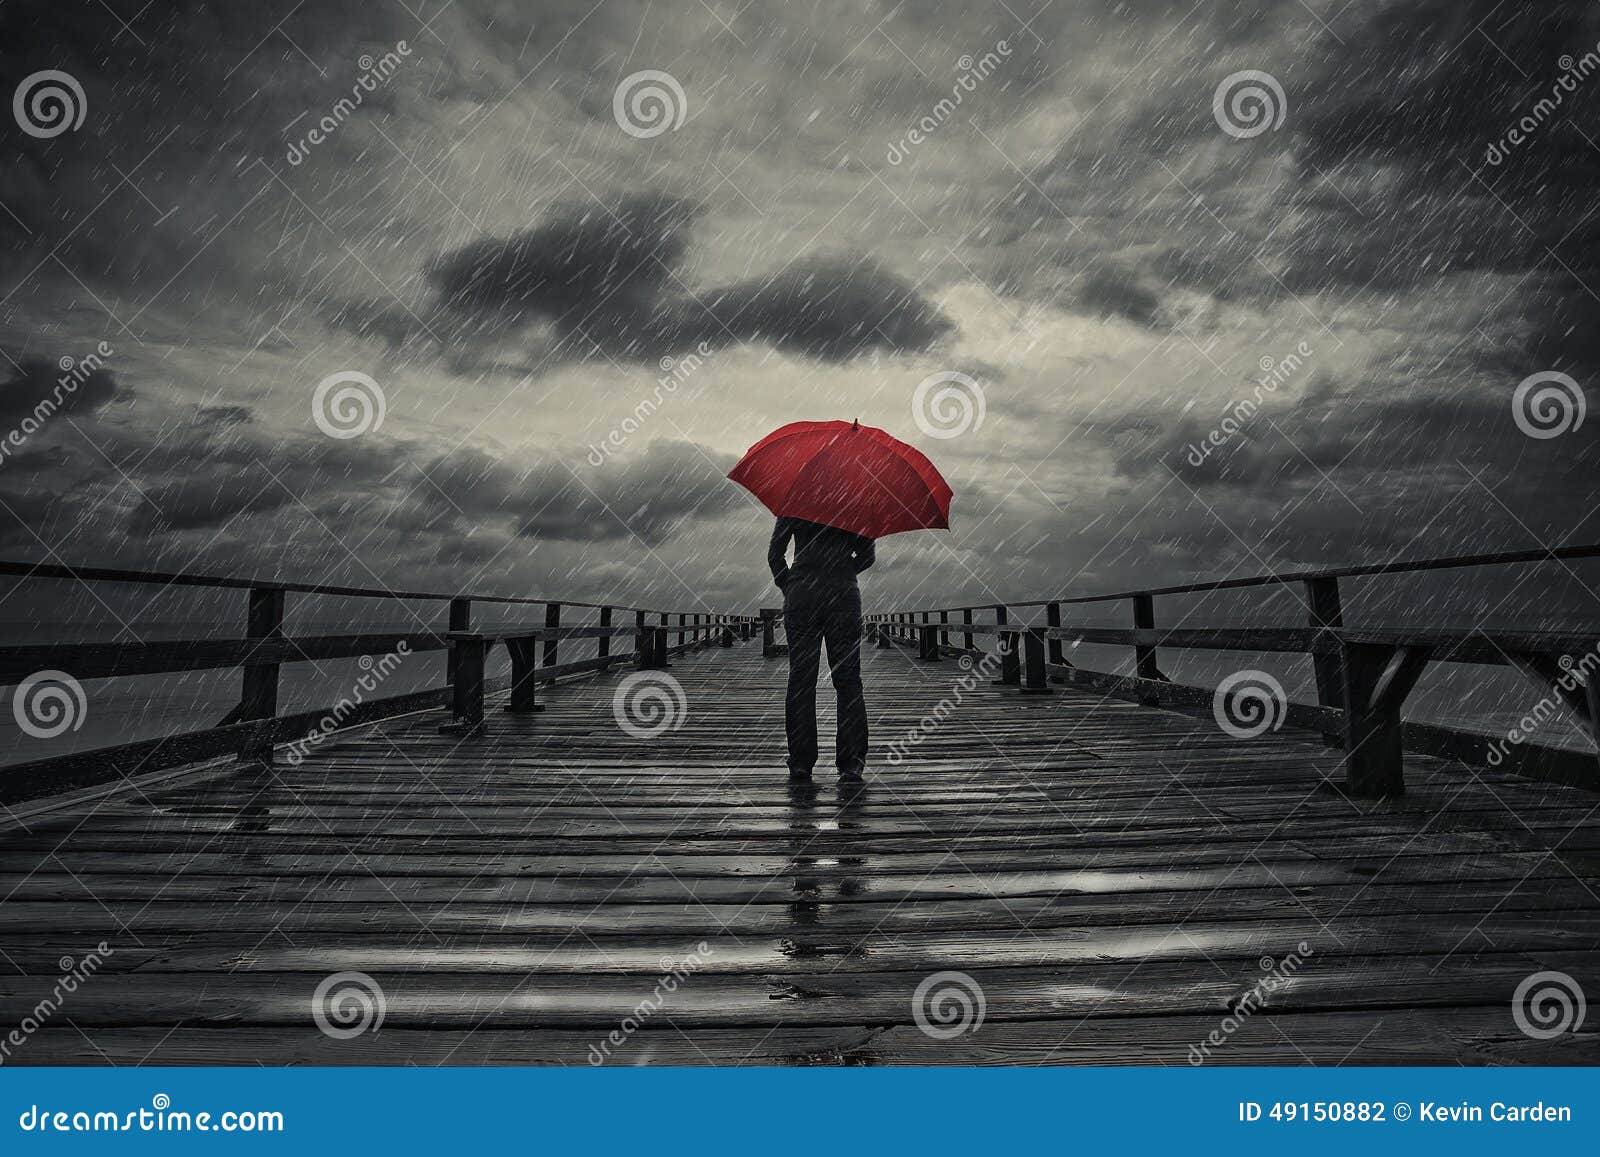 red umbrella in storm